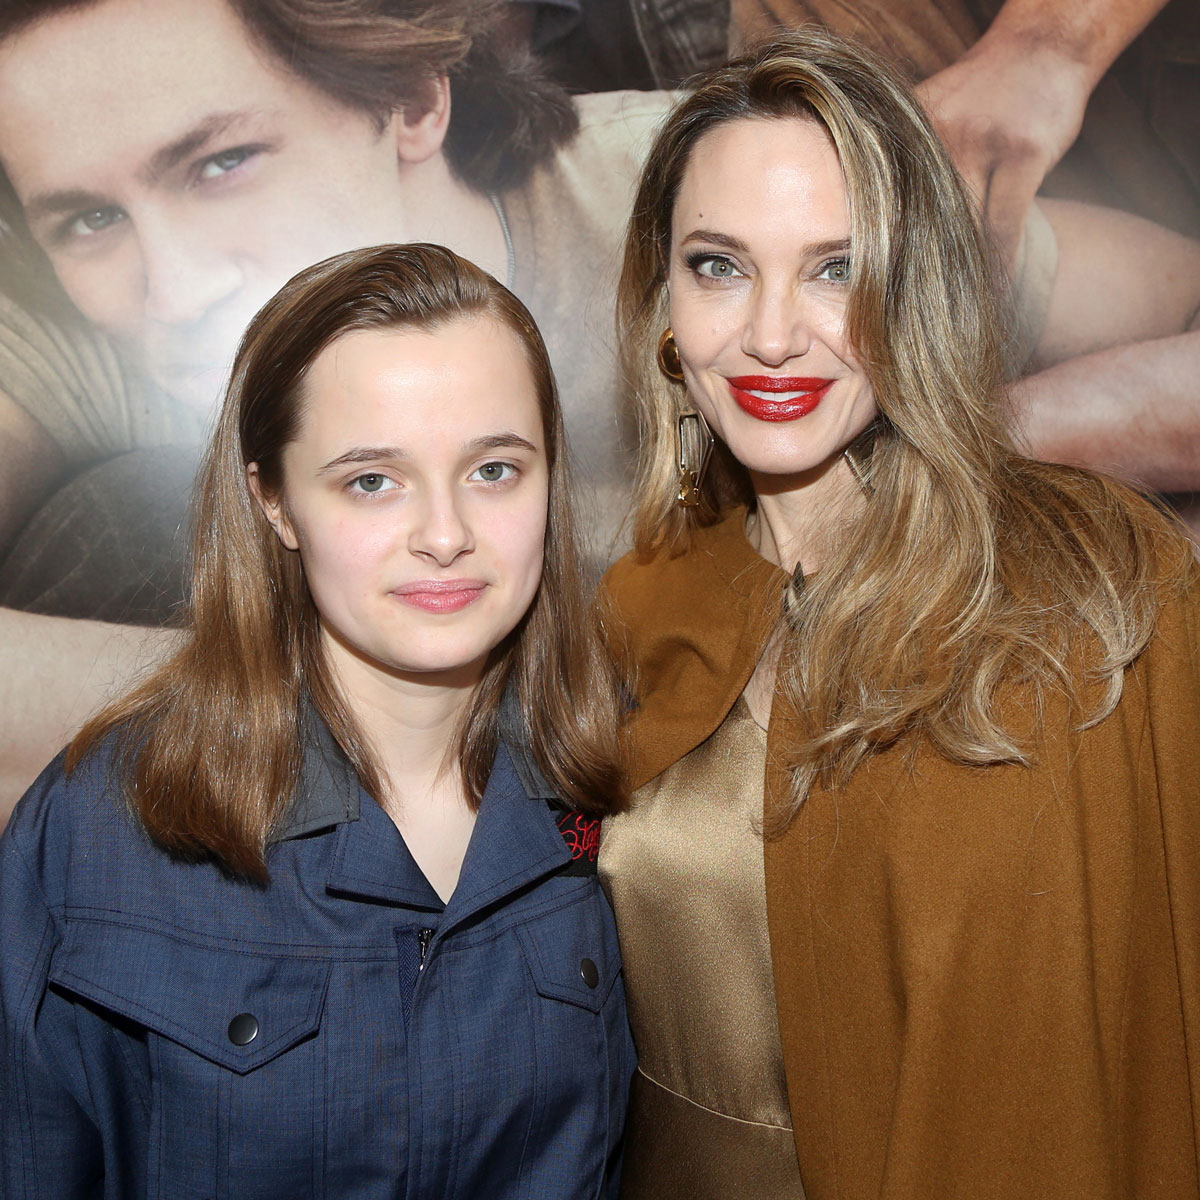 15-годишната дъщеря на Брад Пит и Анджелина Джоли, призната като „Вивиен Джоли“ в афиша на Бродуей